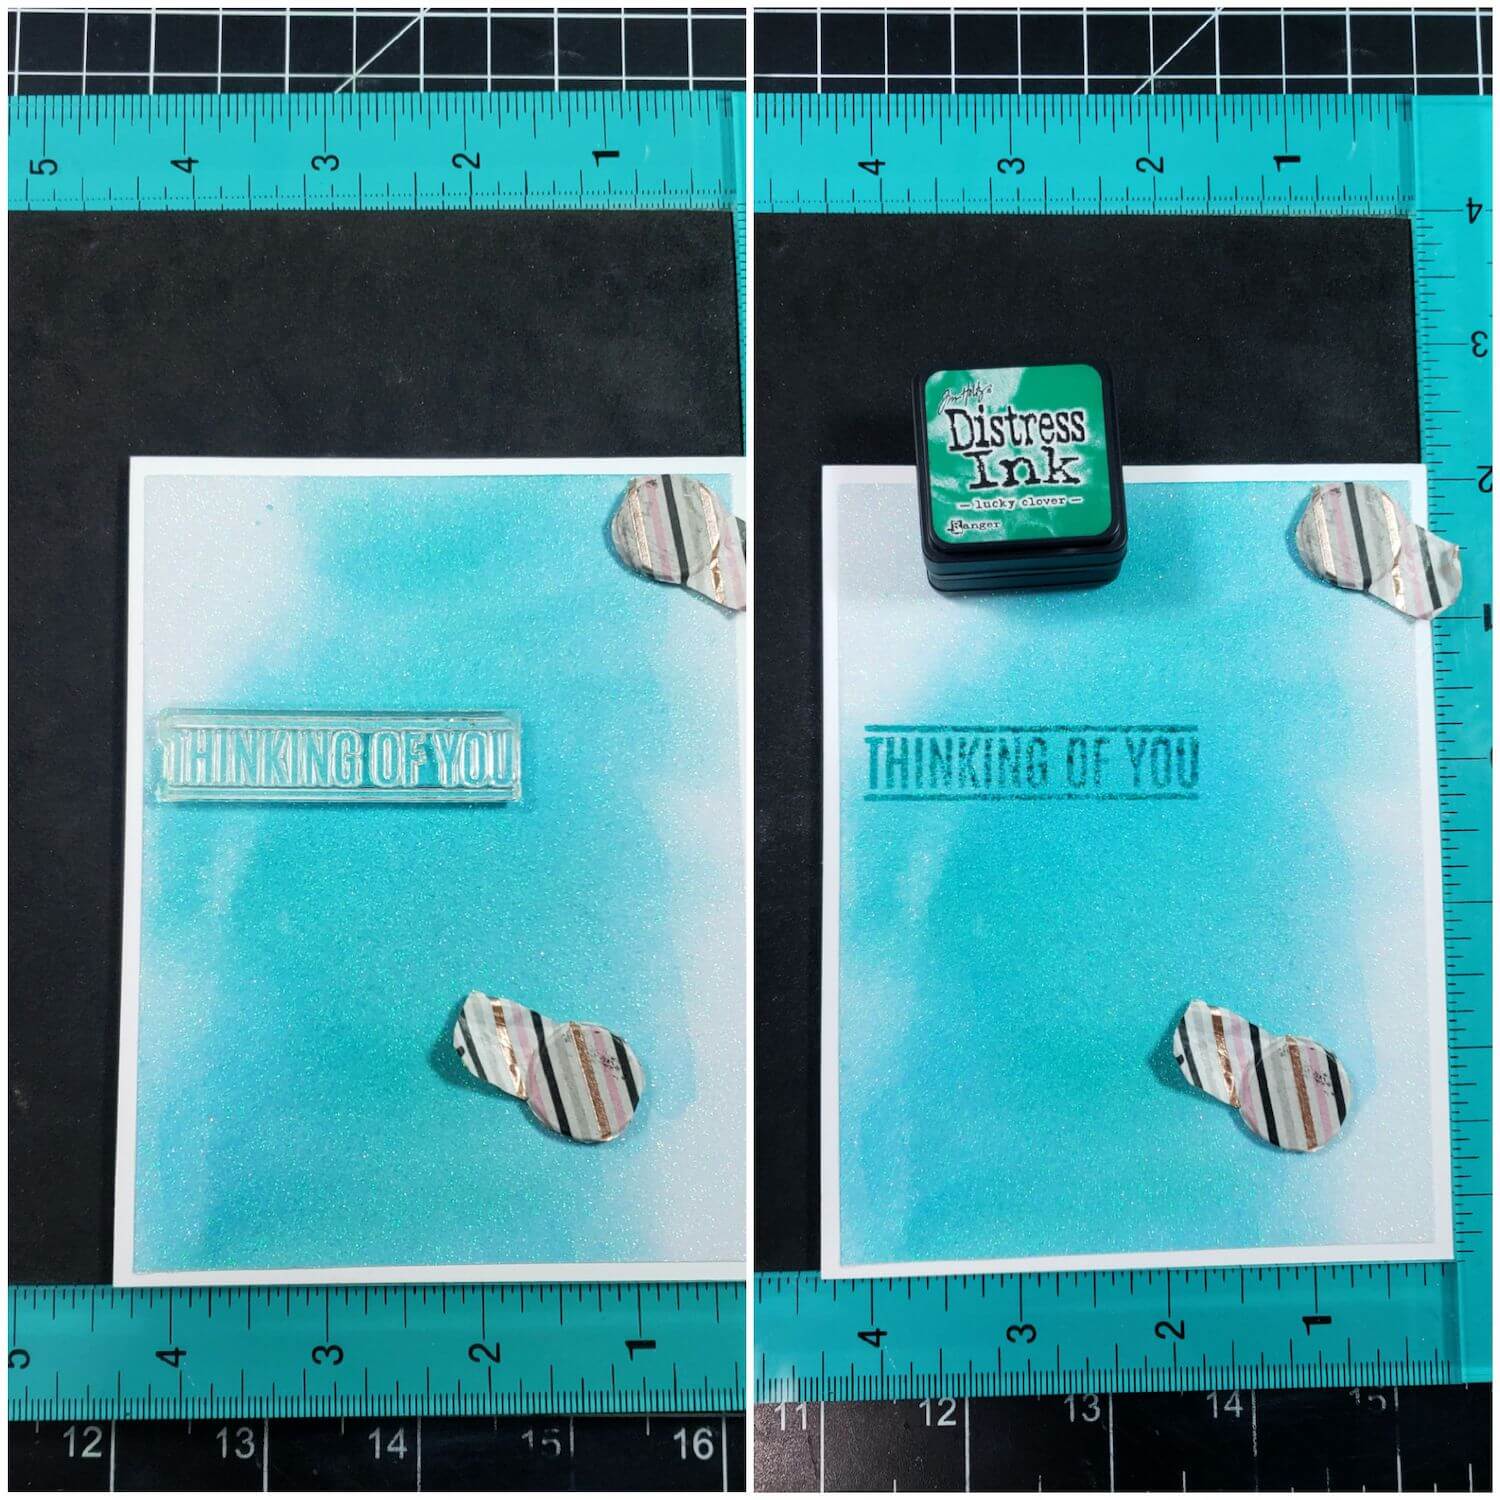 Stamping sentiment on Diamond Print White Inkjet Printable Glitter Paper